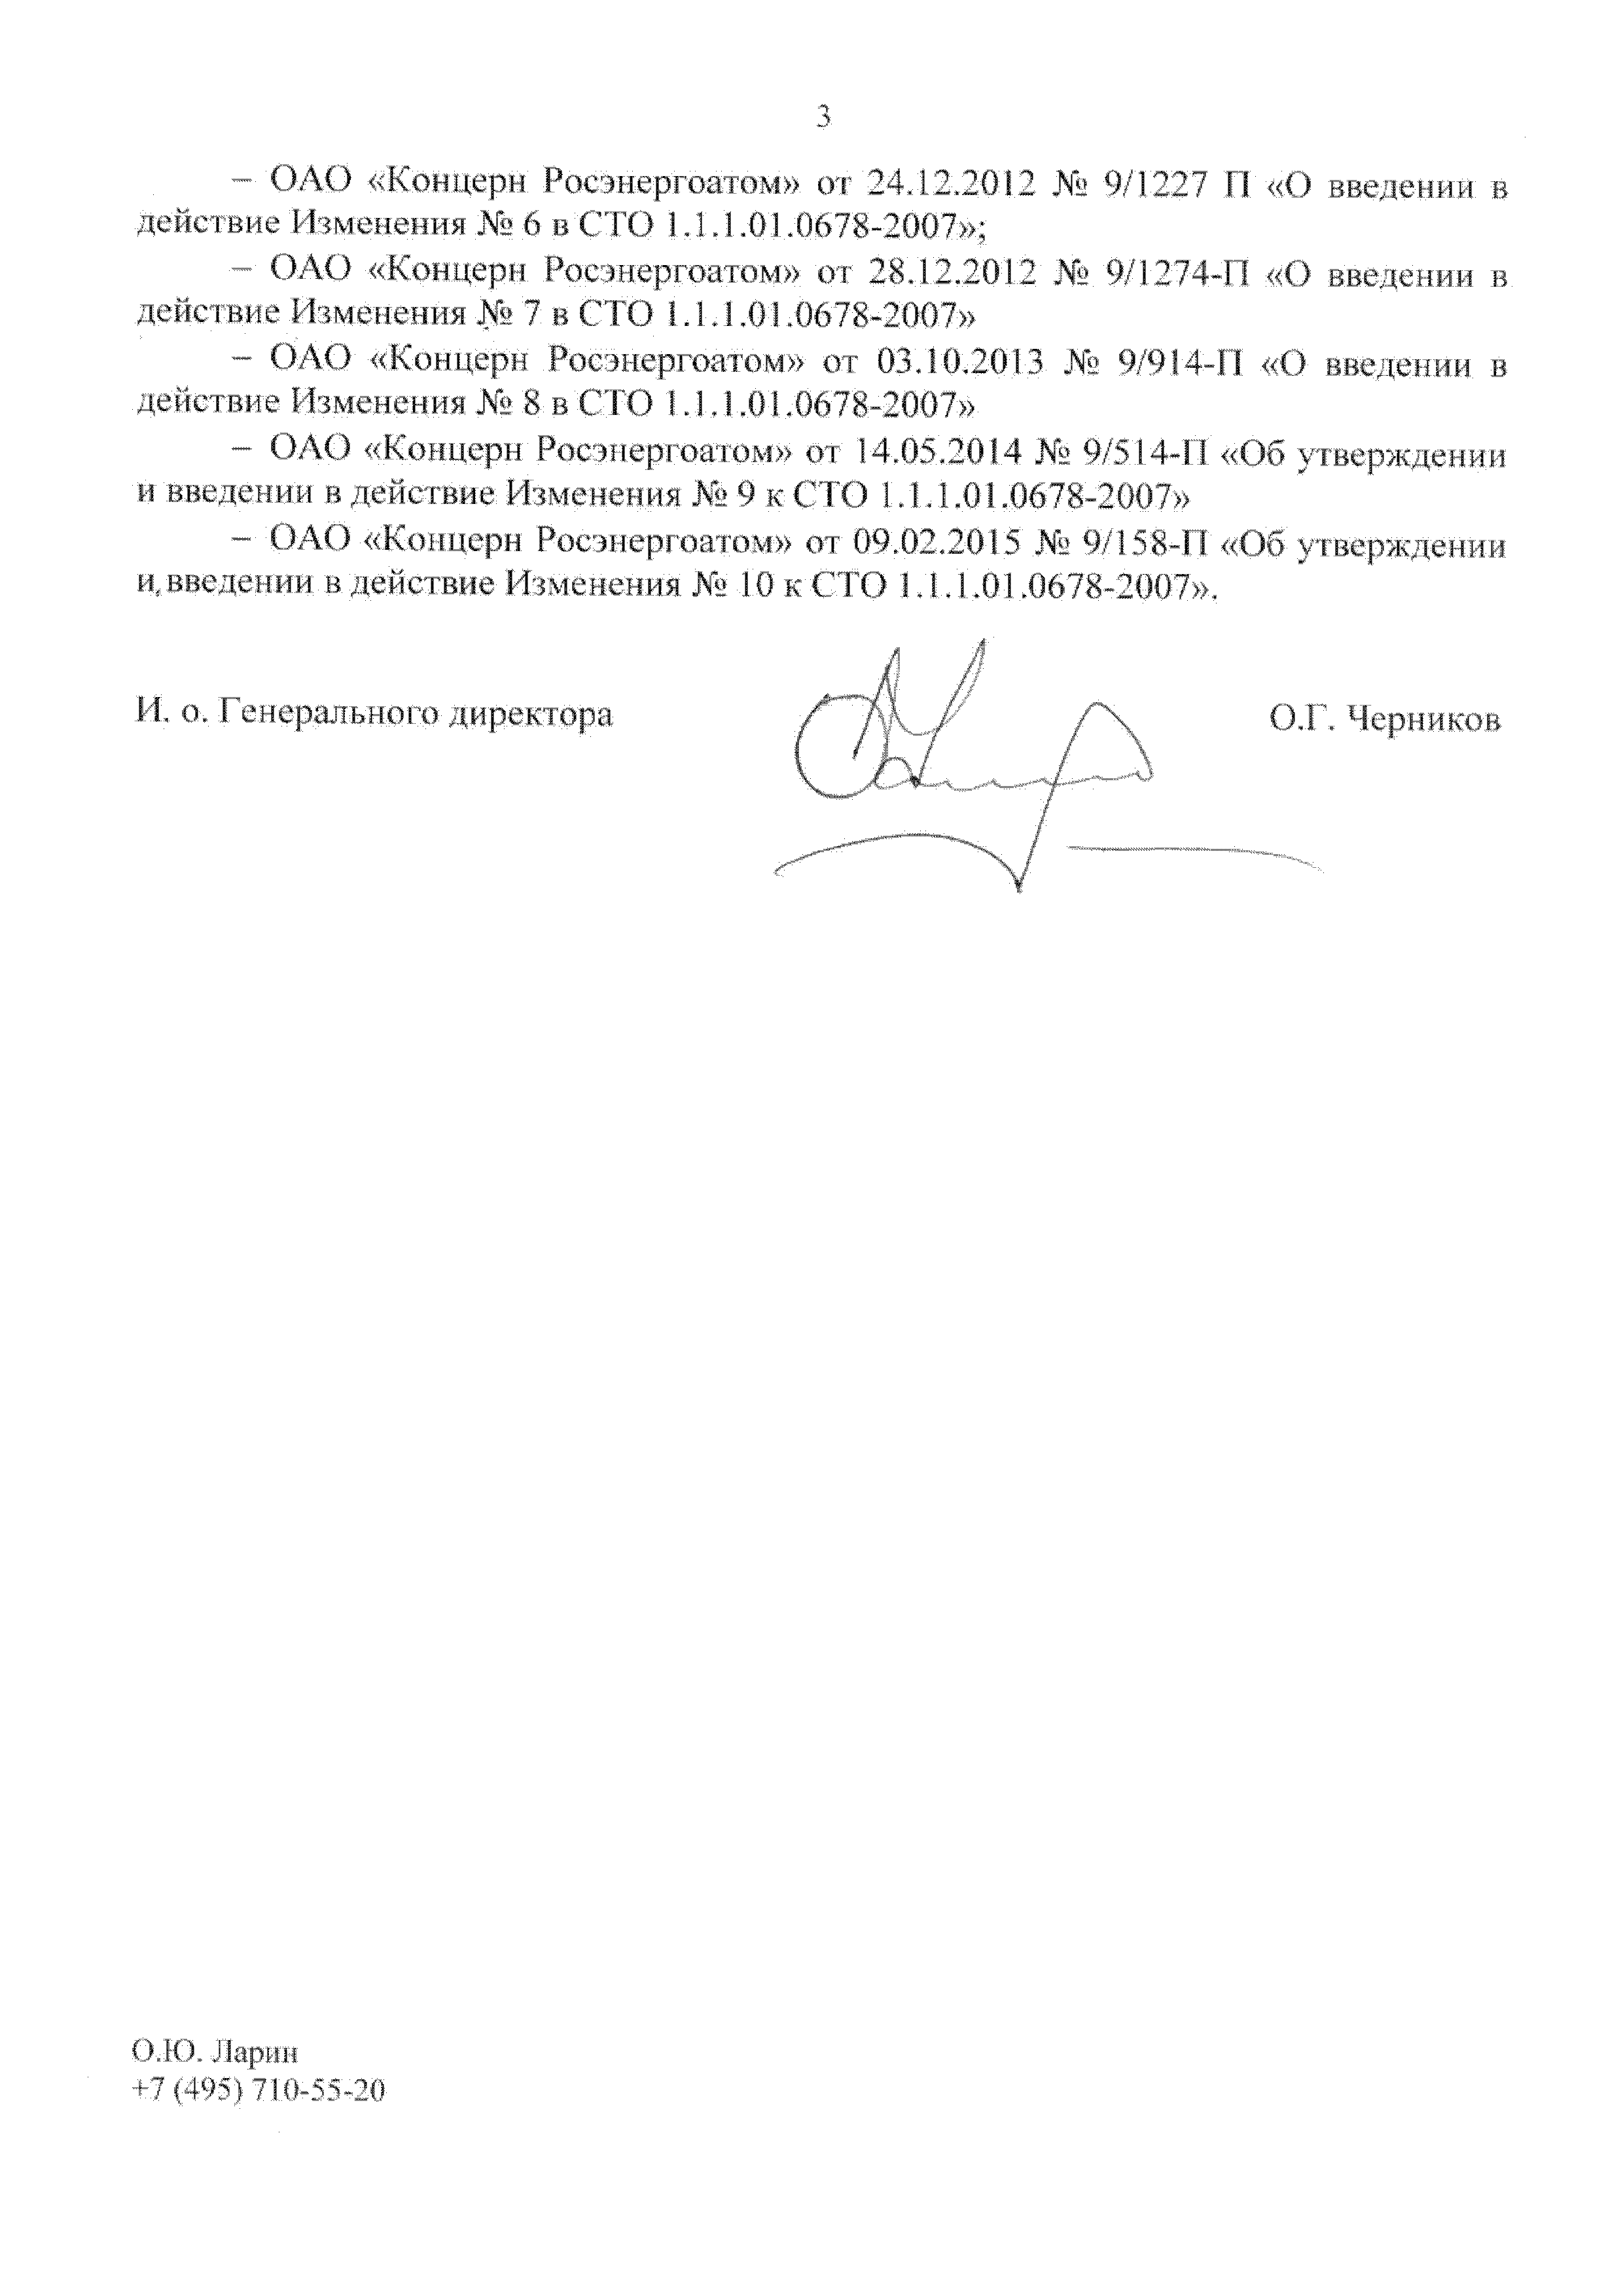 СТО 1.1.1.01.0678-2015